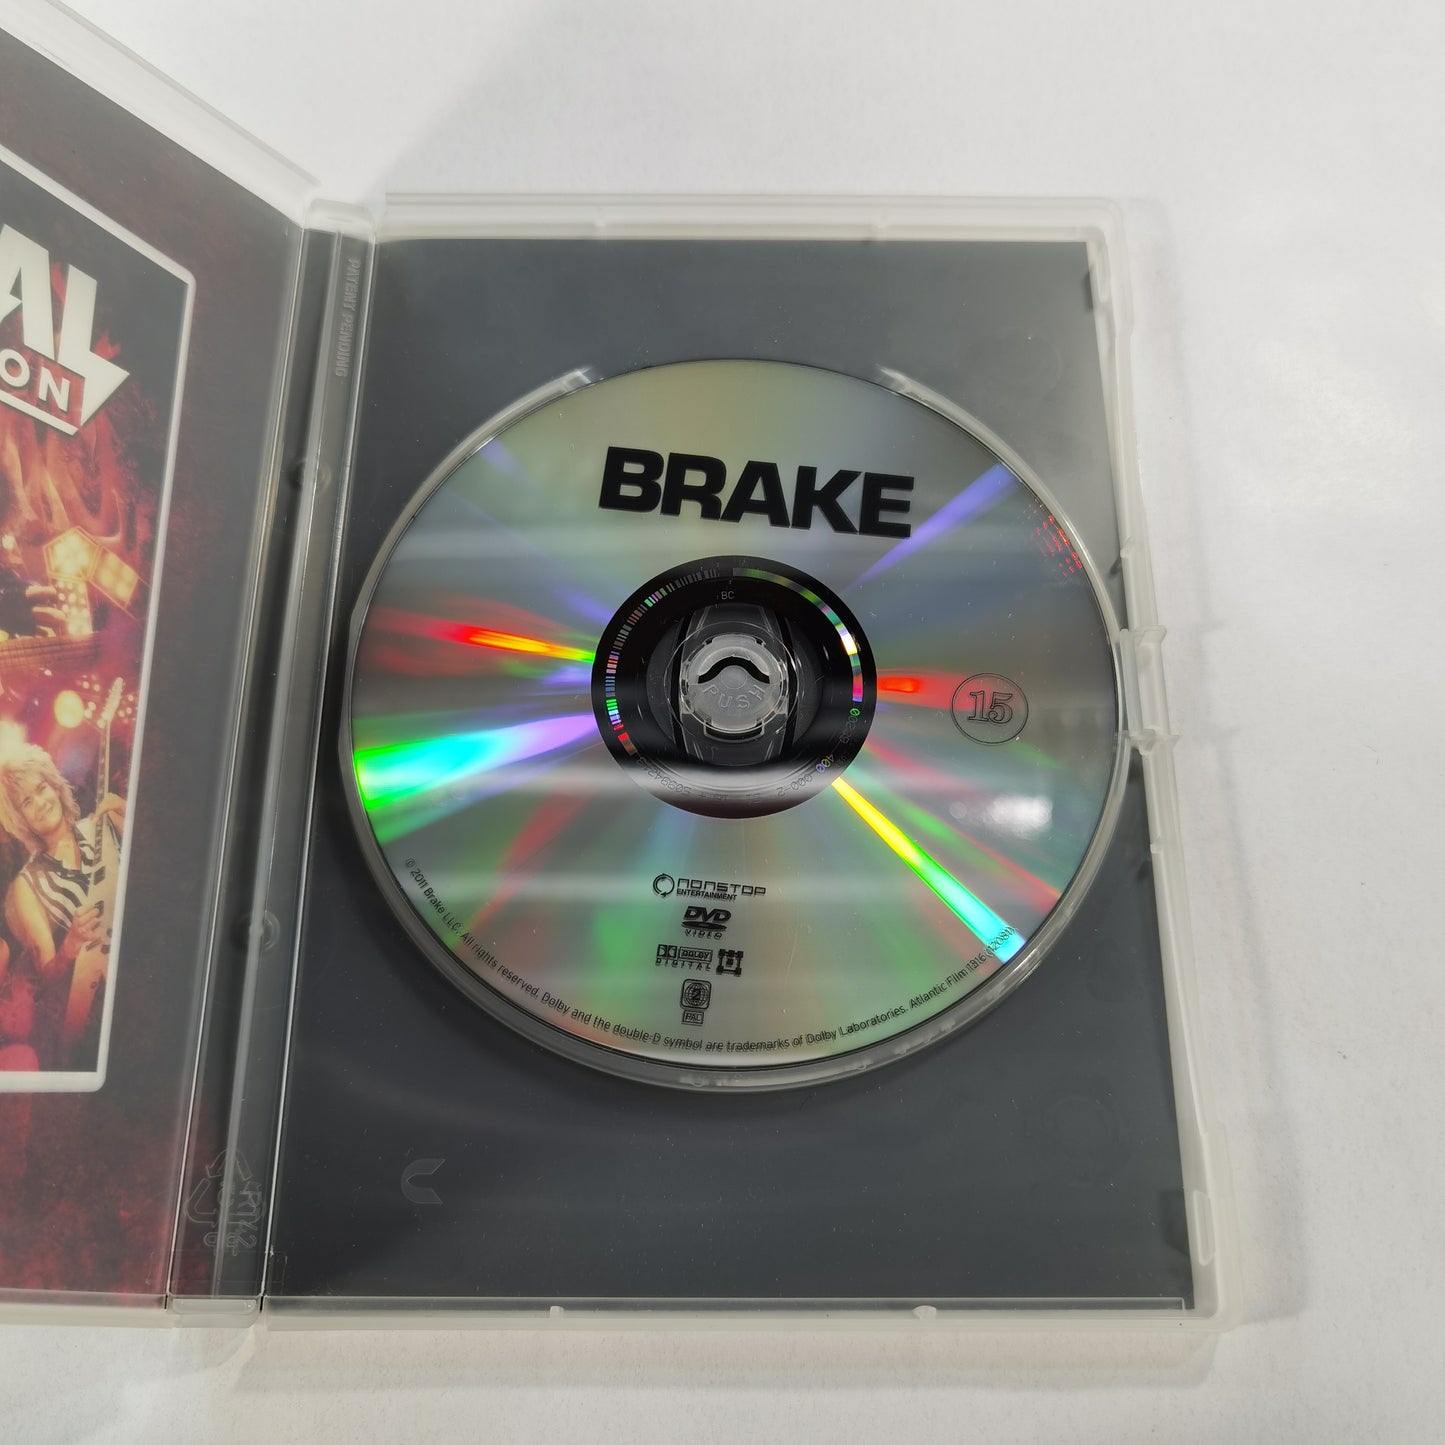 Brake (2012) - DVD SE NO DK